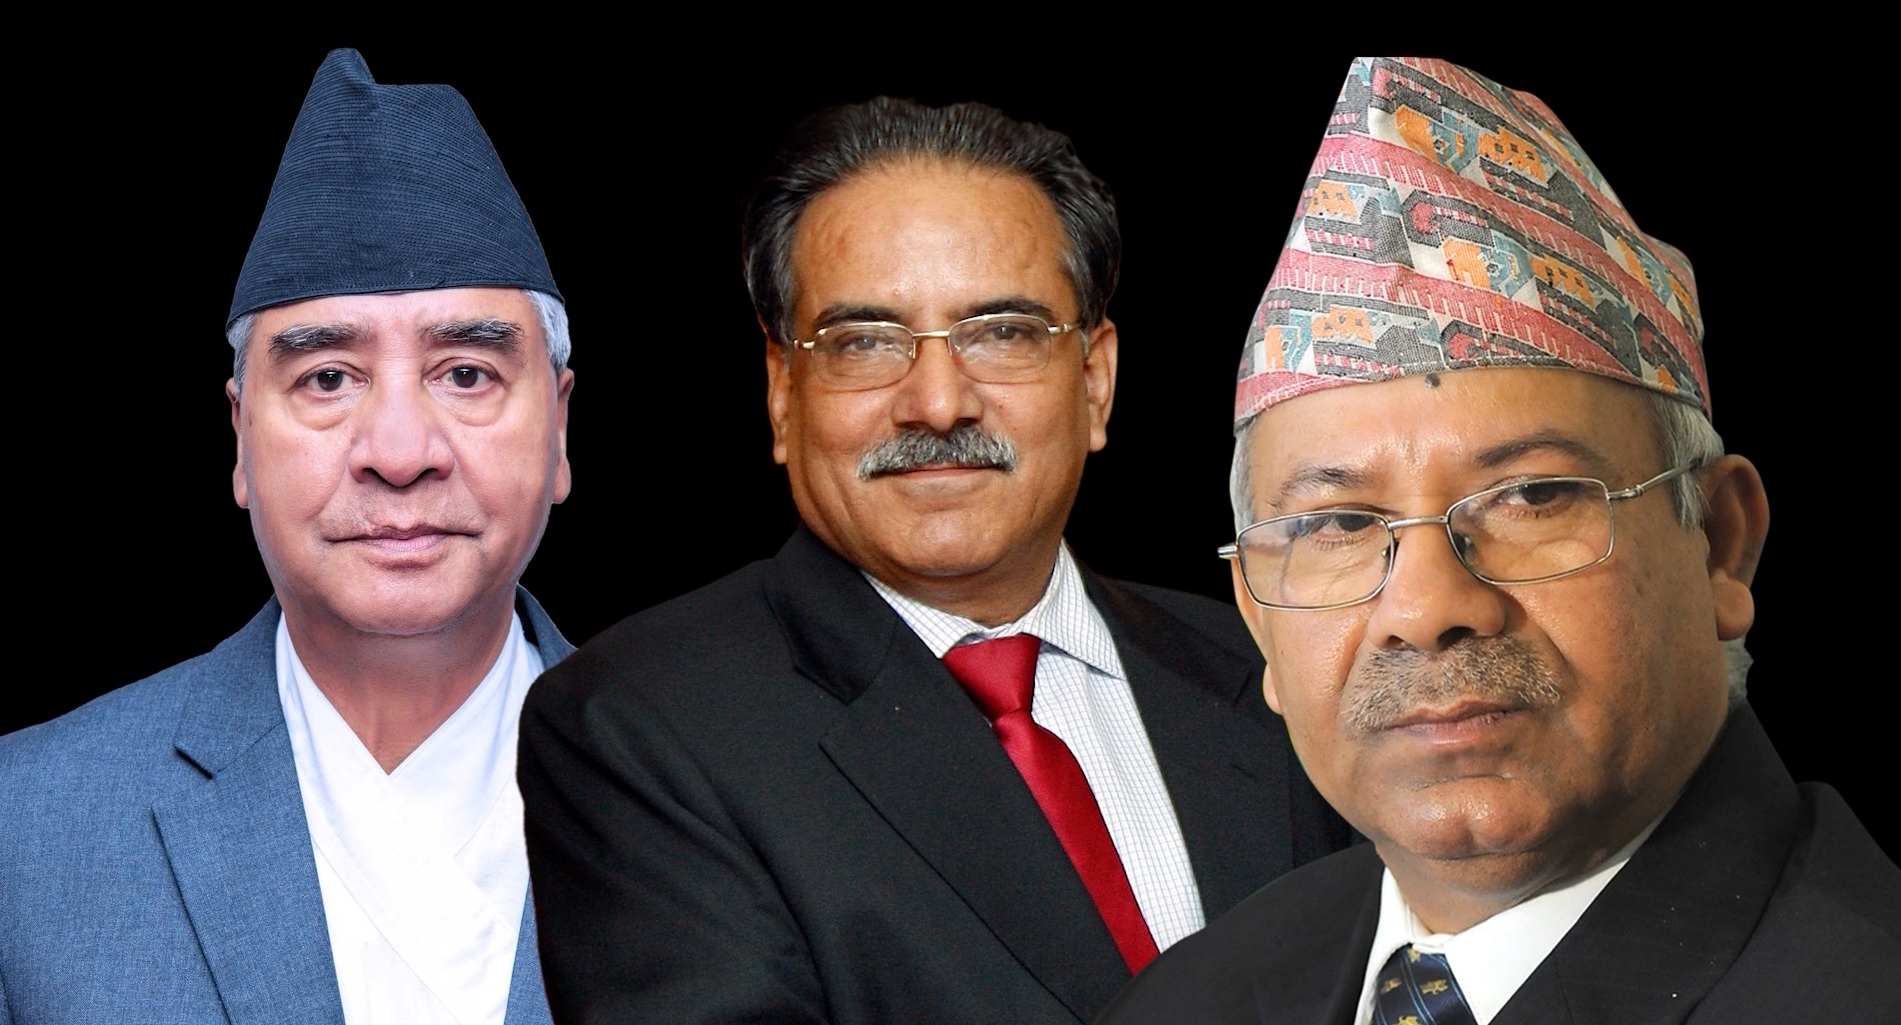 सत्ता गठबन्धनले काठमाडौँमा आज चुनावी सभा गर्दै